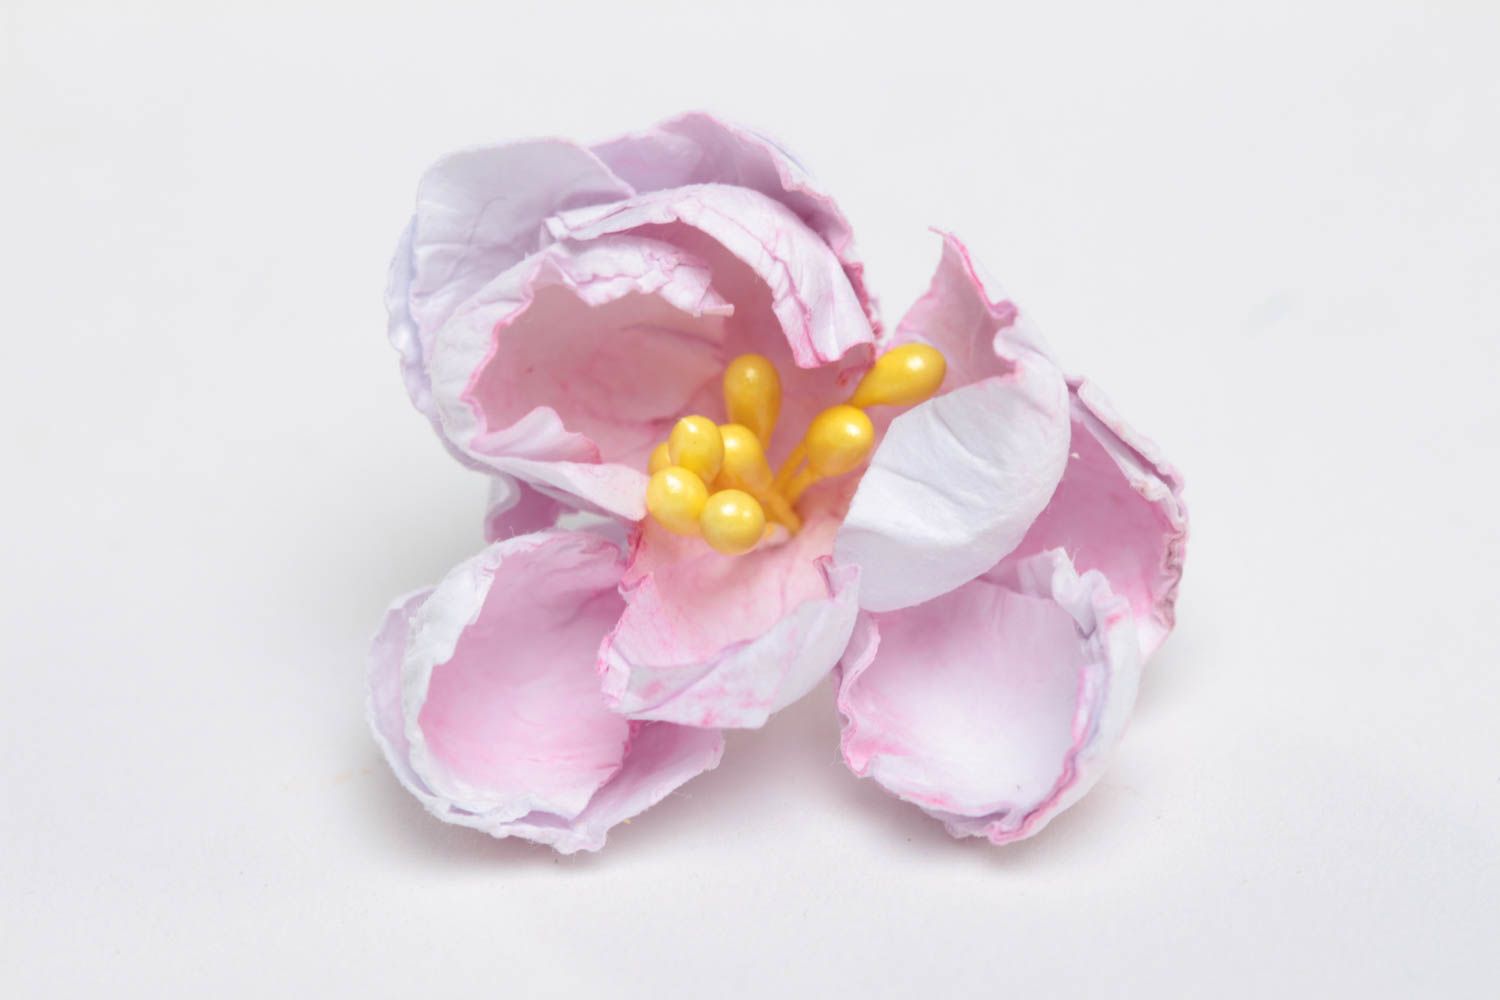 Бумажный цветок для скрапбукинга ручной работы расписаный акварелью розовый фото 2